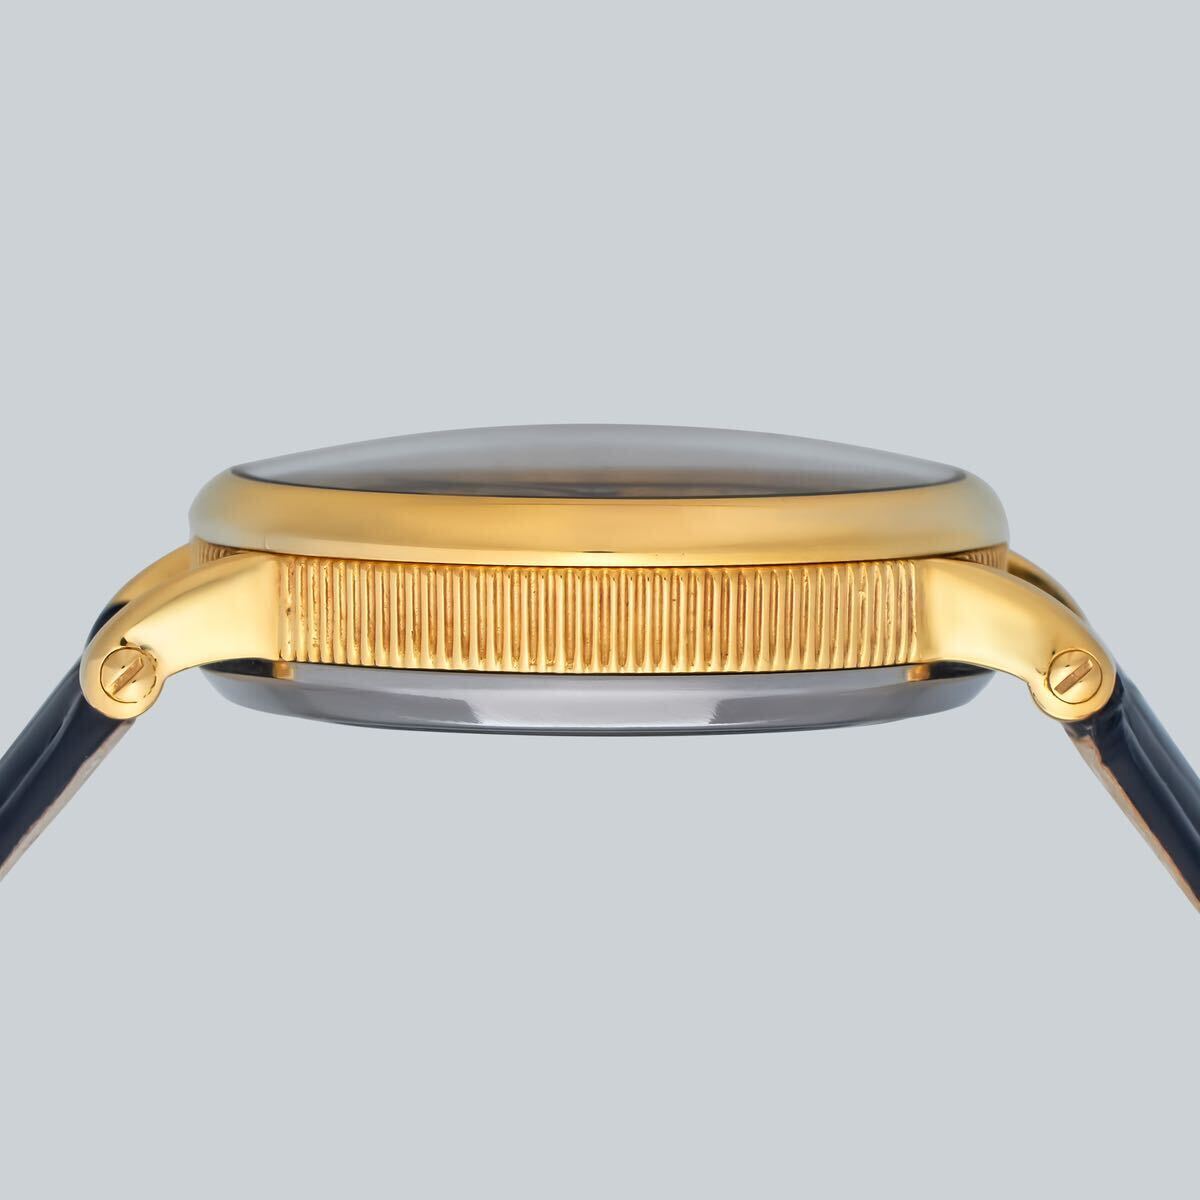 Rolex 44mm Men's Wristwatch Arranged As A Pocket Watch Manual Winding Skeleton Marriage Watch